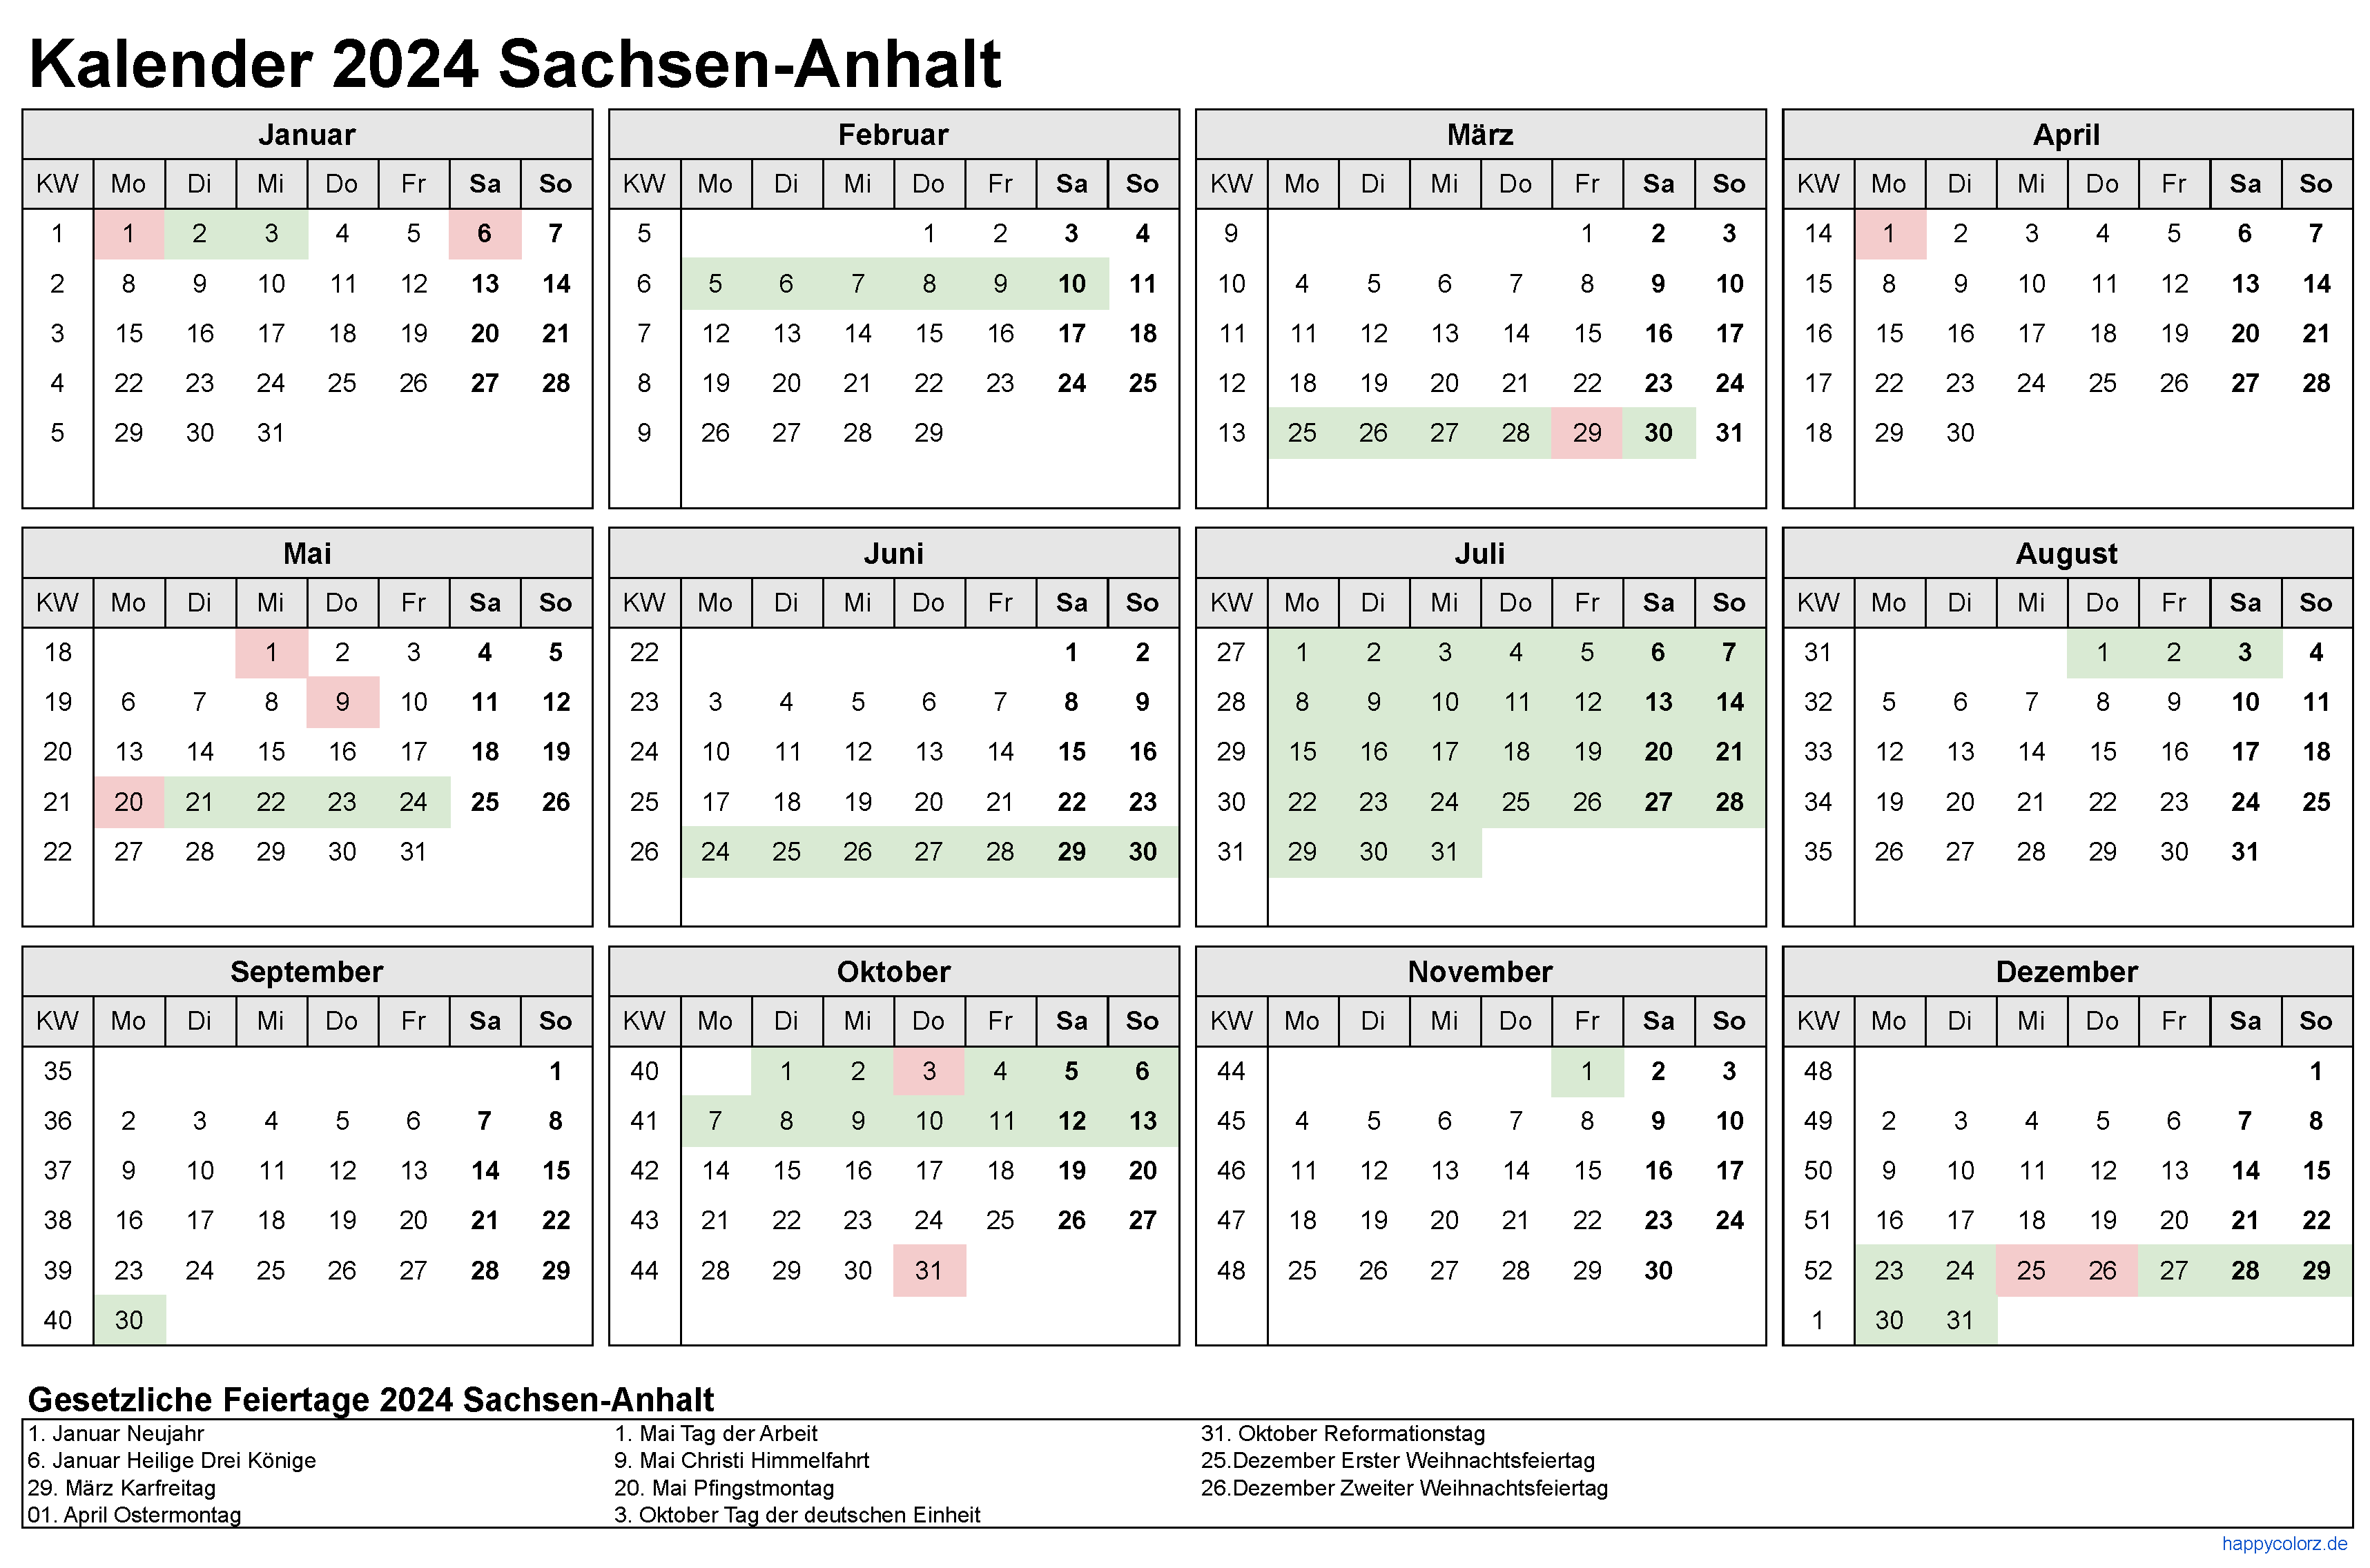 Kalender 2024 Sachsen-Anhalt zum Ausdrucken